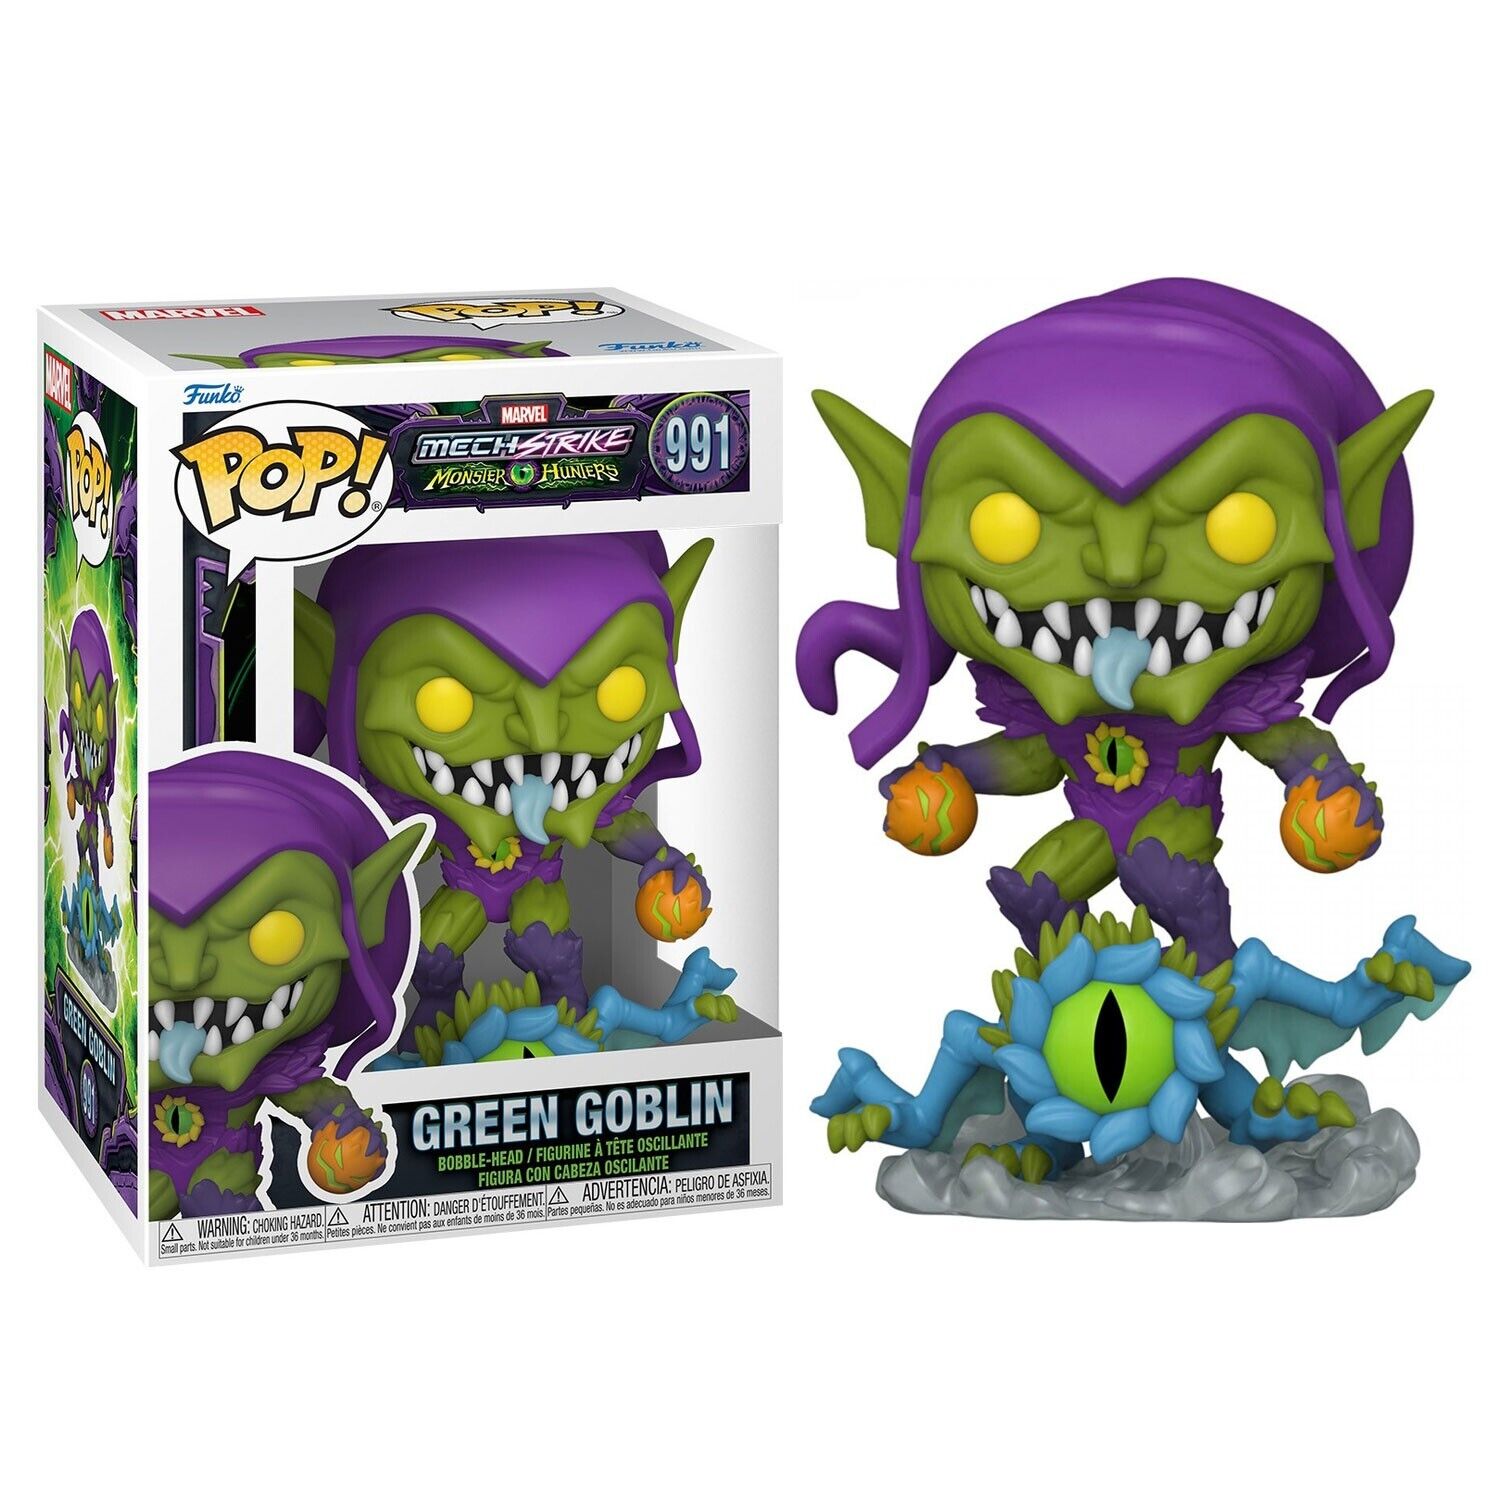 New Marvel Mech Strike Green Goblin Pop! Vinyl Figure - Monster Hunters